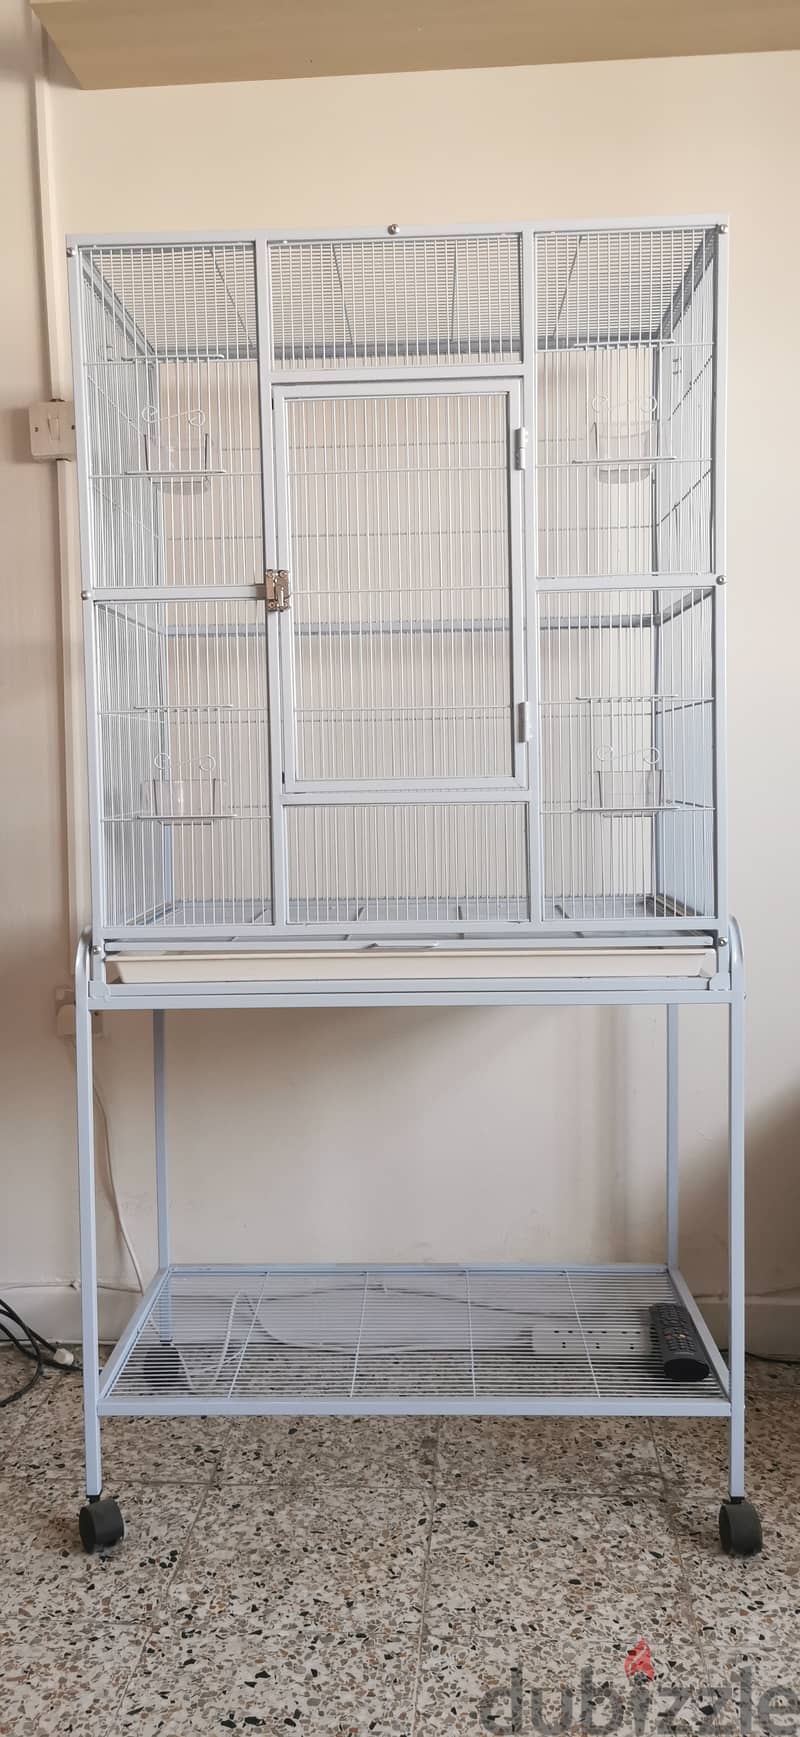 Big aviary / bird cage 0